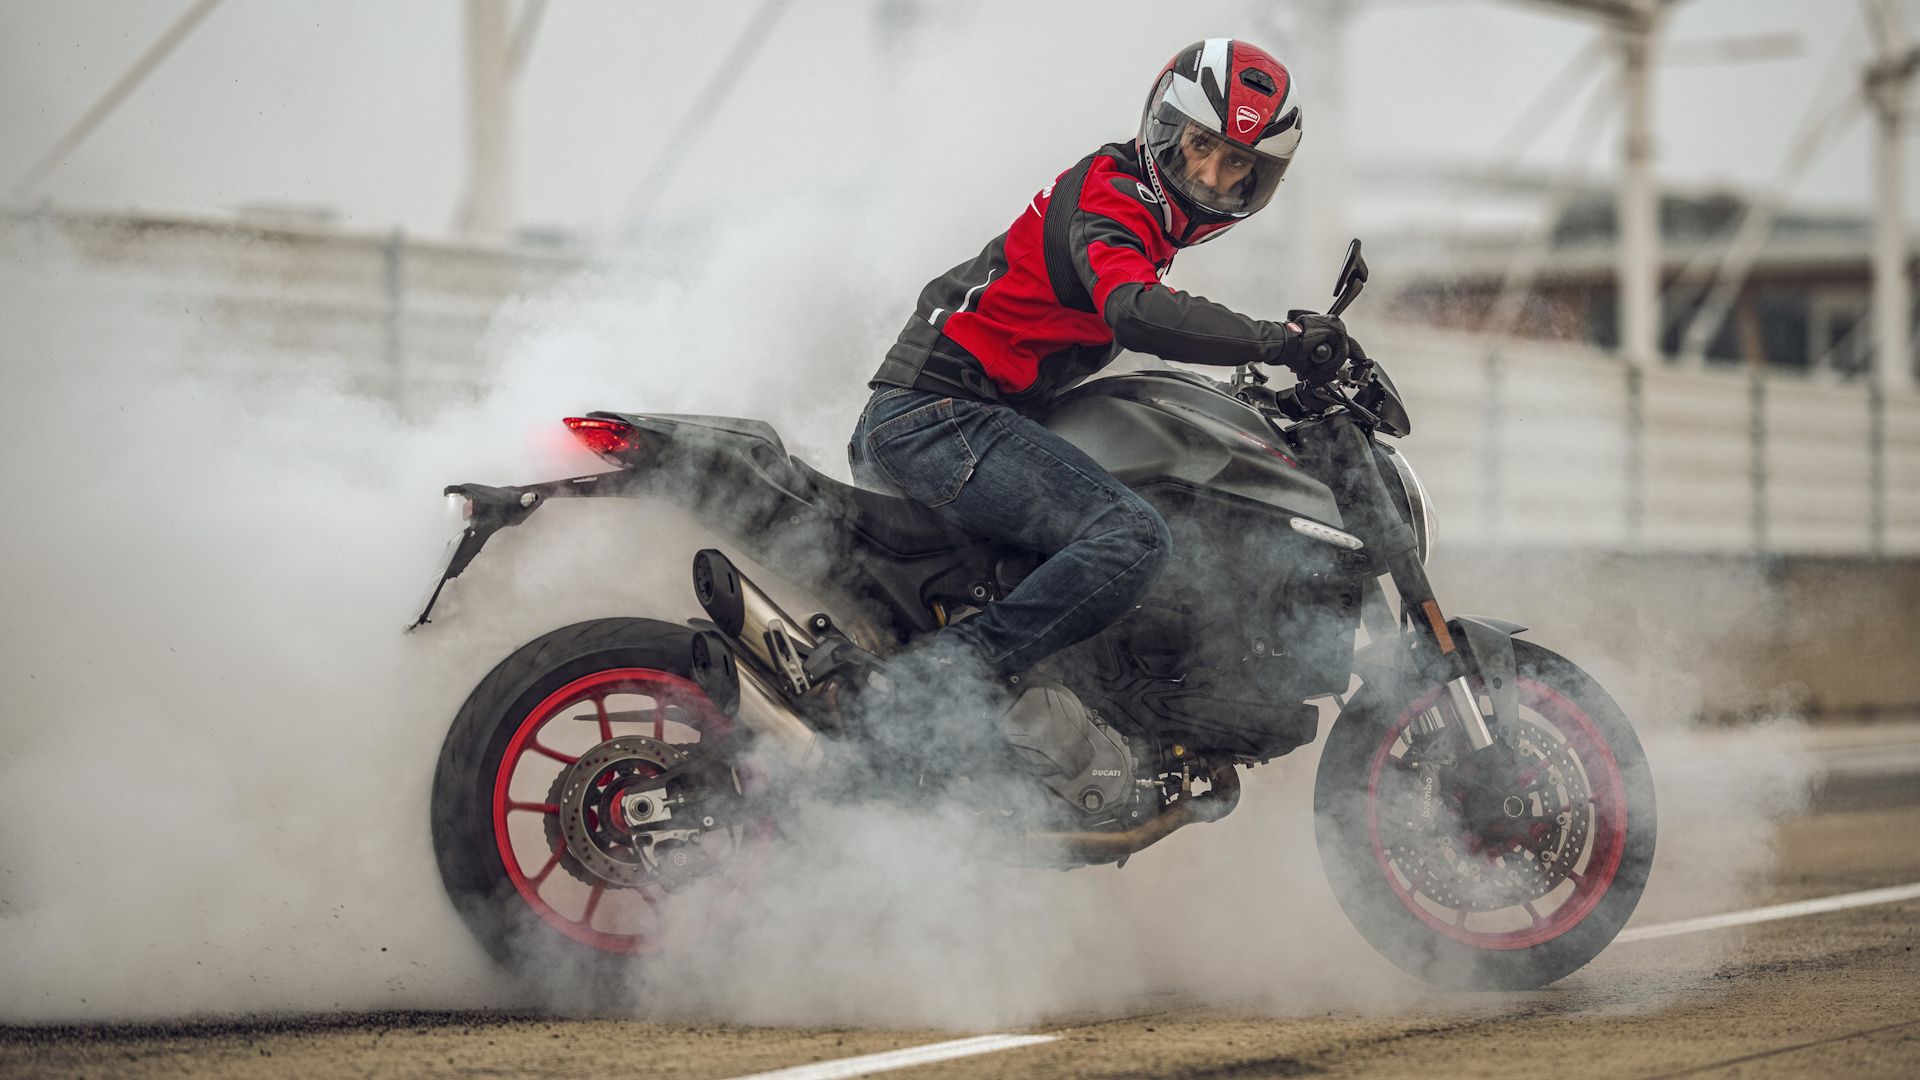 2021 Ducati Monster Plus doing a burnout